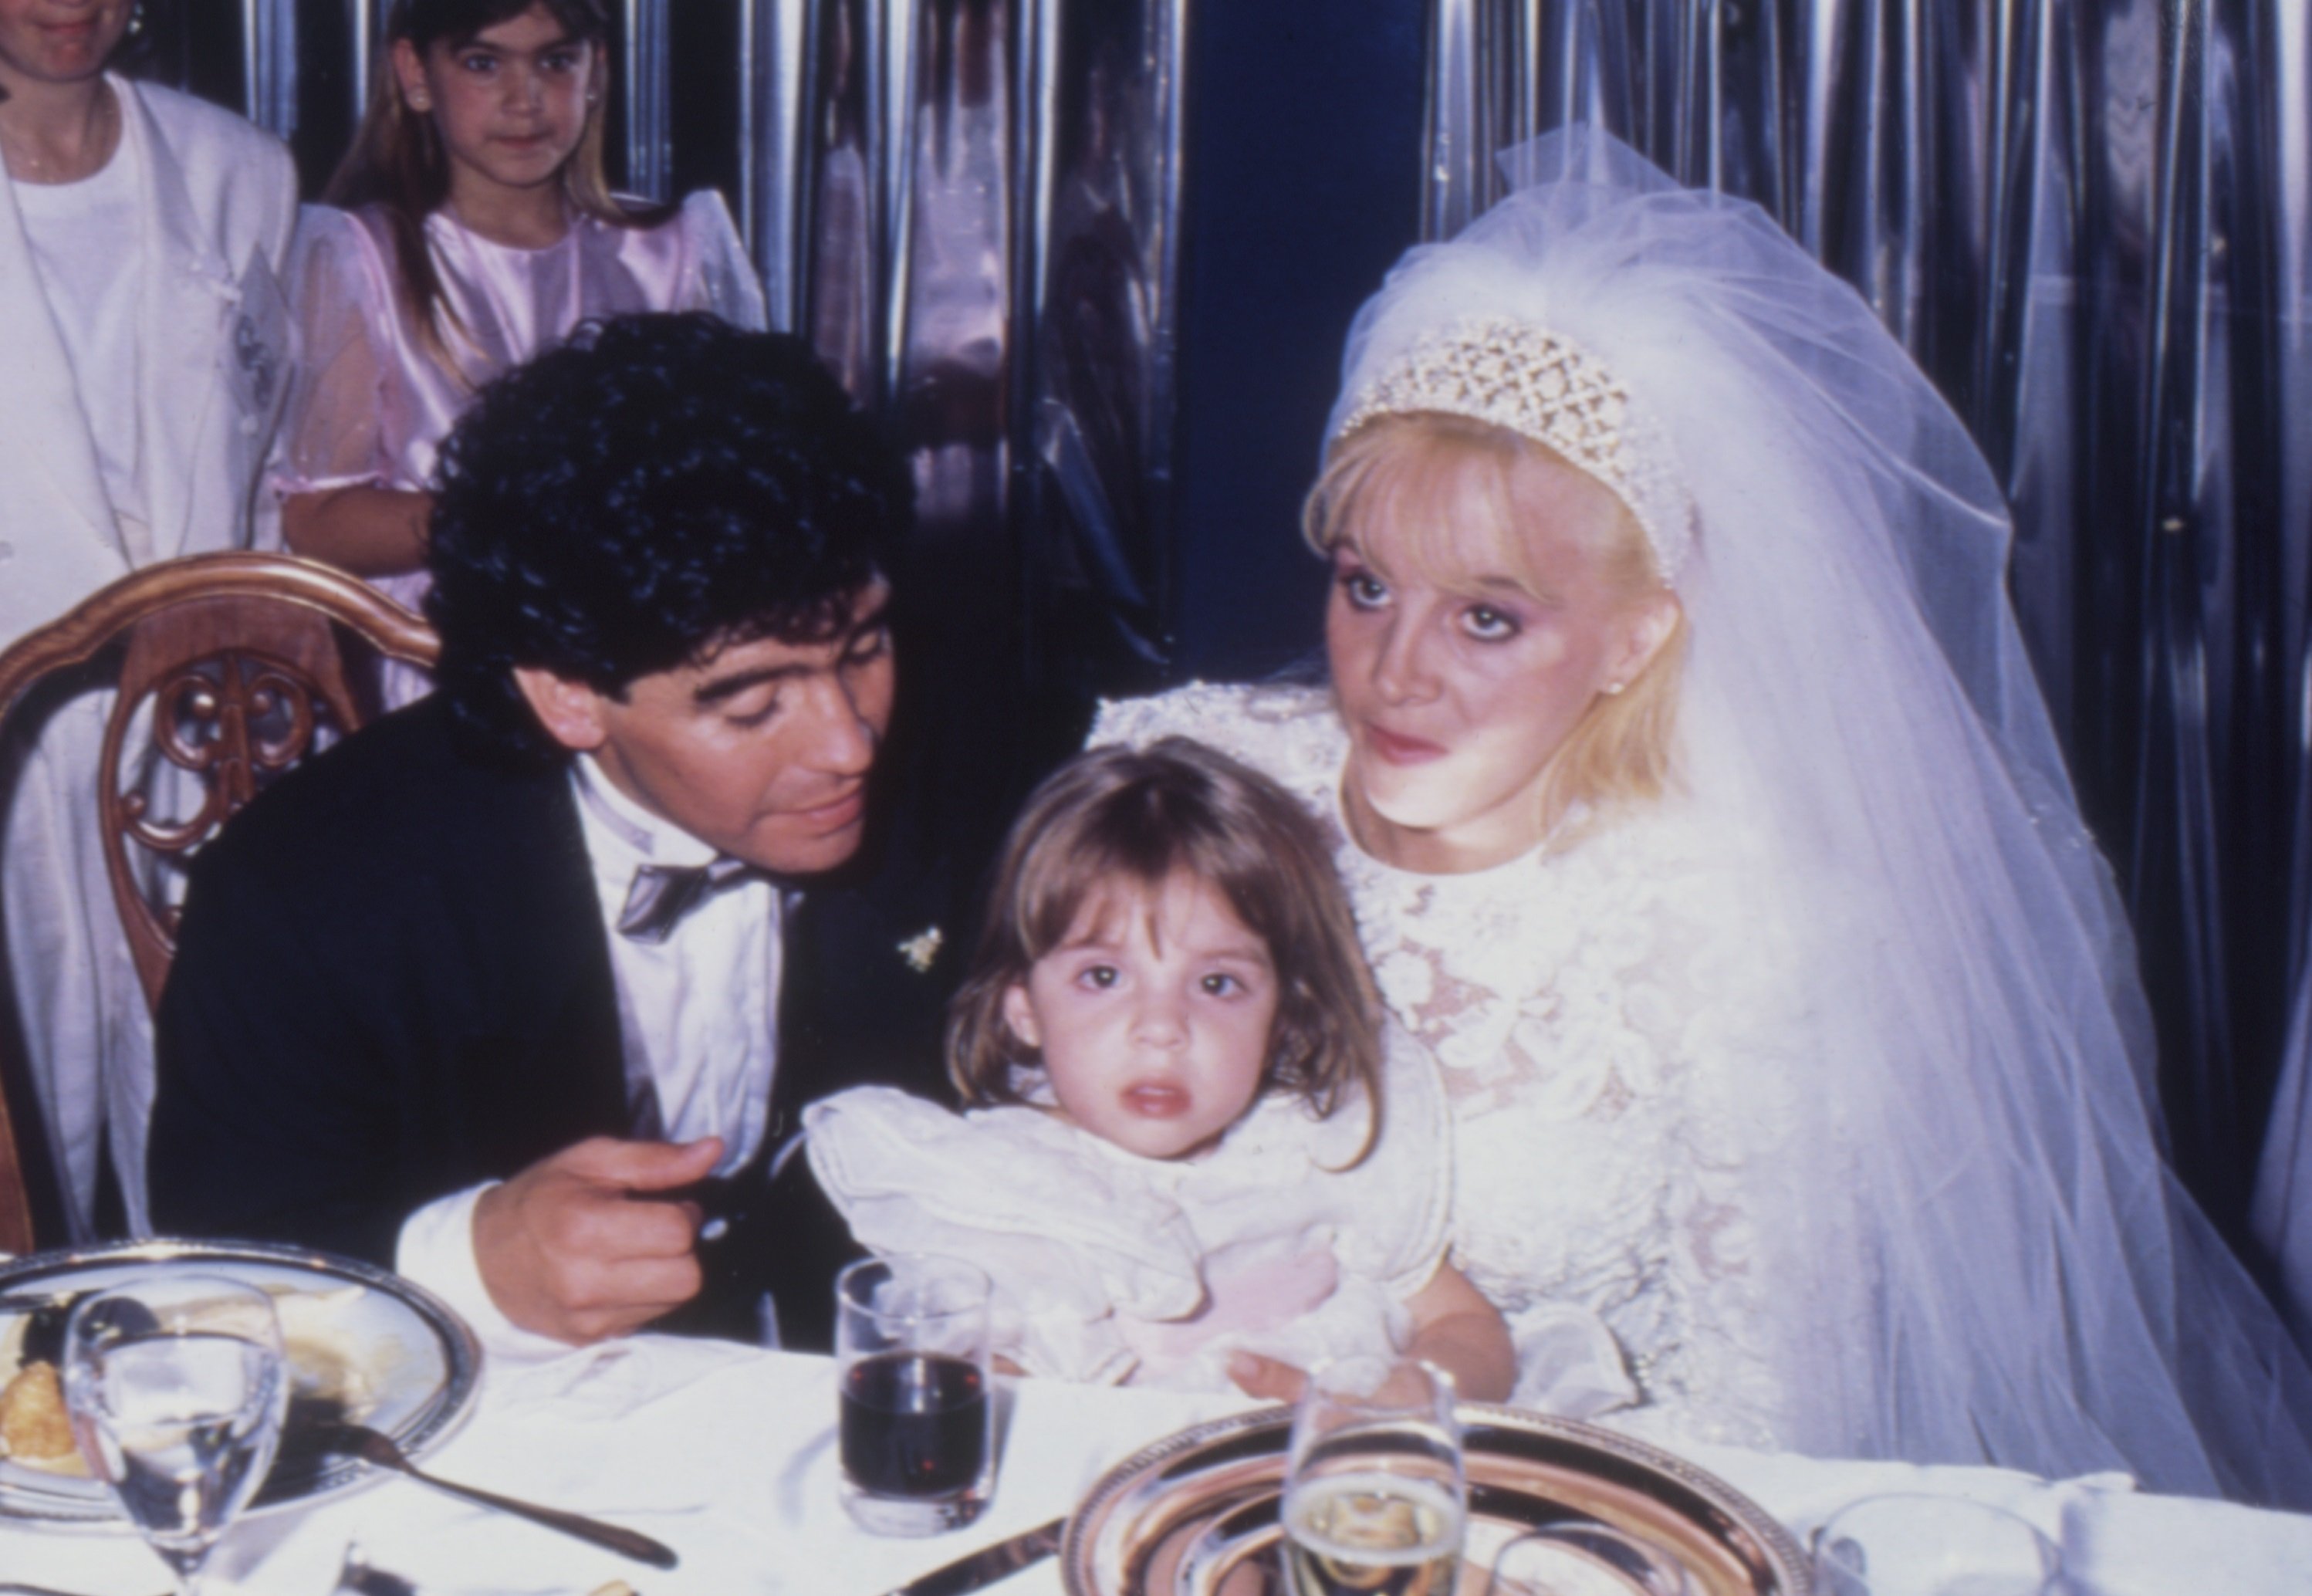 Diego Maradona, Claudia Villafañe y su hija Dalma, durante su boda en el Estadio Luna Park, el 7 de noviembre de 1989 en Buenos Aires, Argentina. | Foto: Getty Images